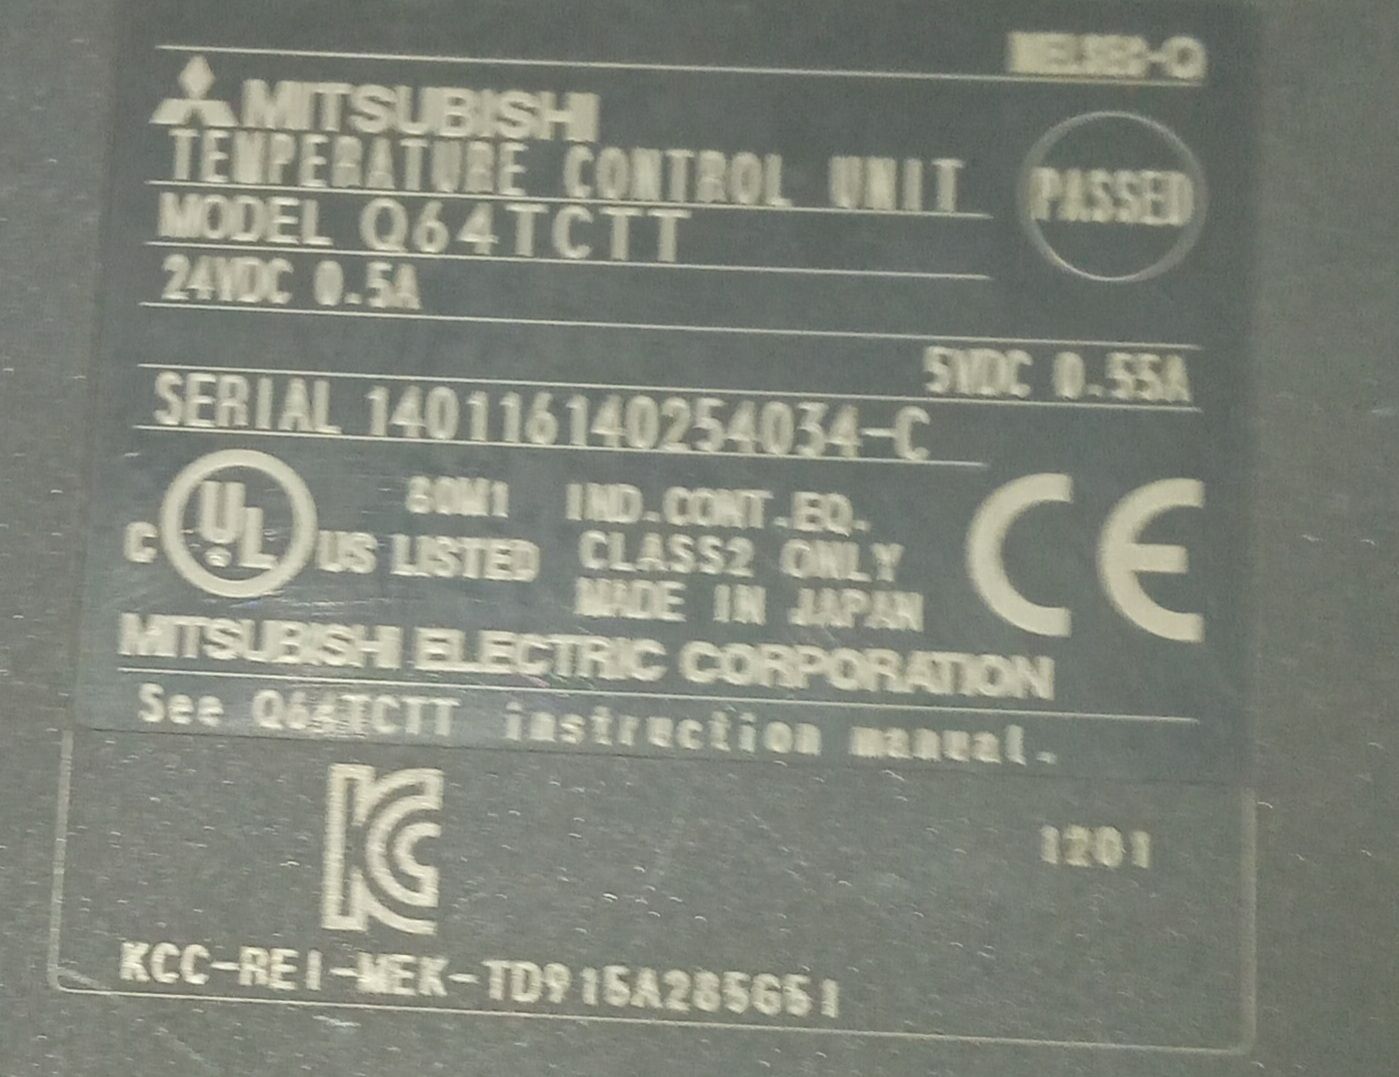 MITSUBISHI Temperature Control Unit Q64TCTT